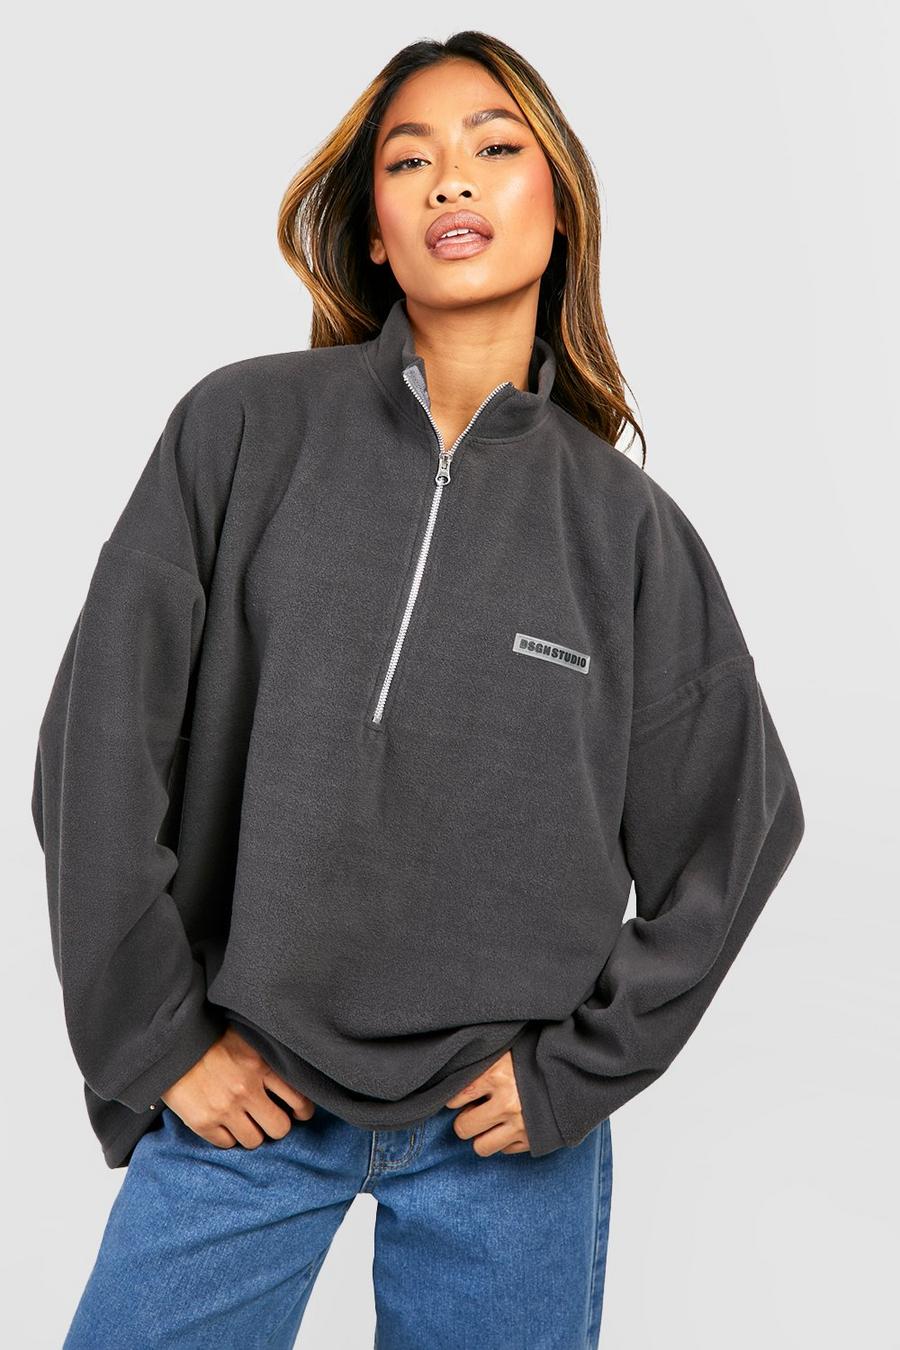 Charcoal grigio Dsgn Studio Half Zip Polar Fleece Oversized Sweatshirt 